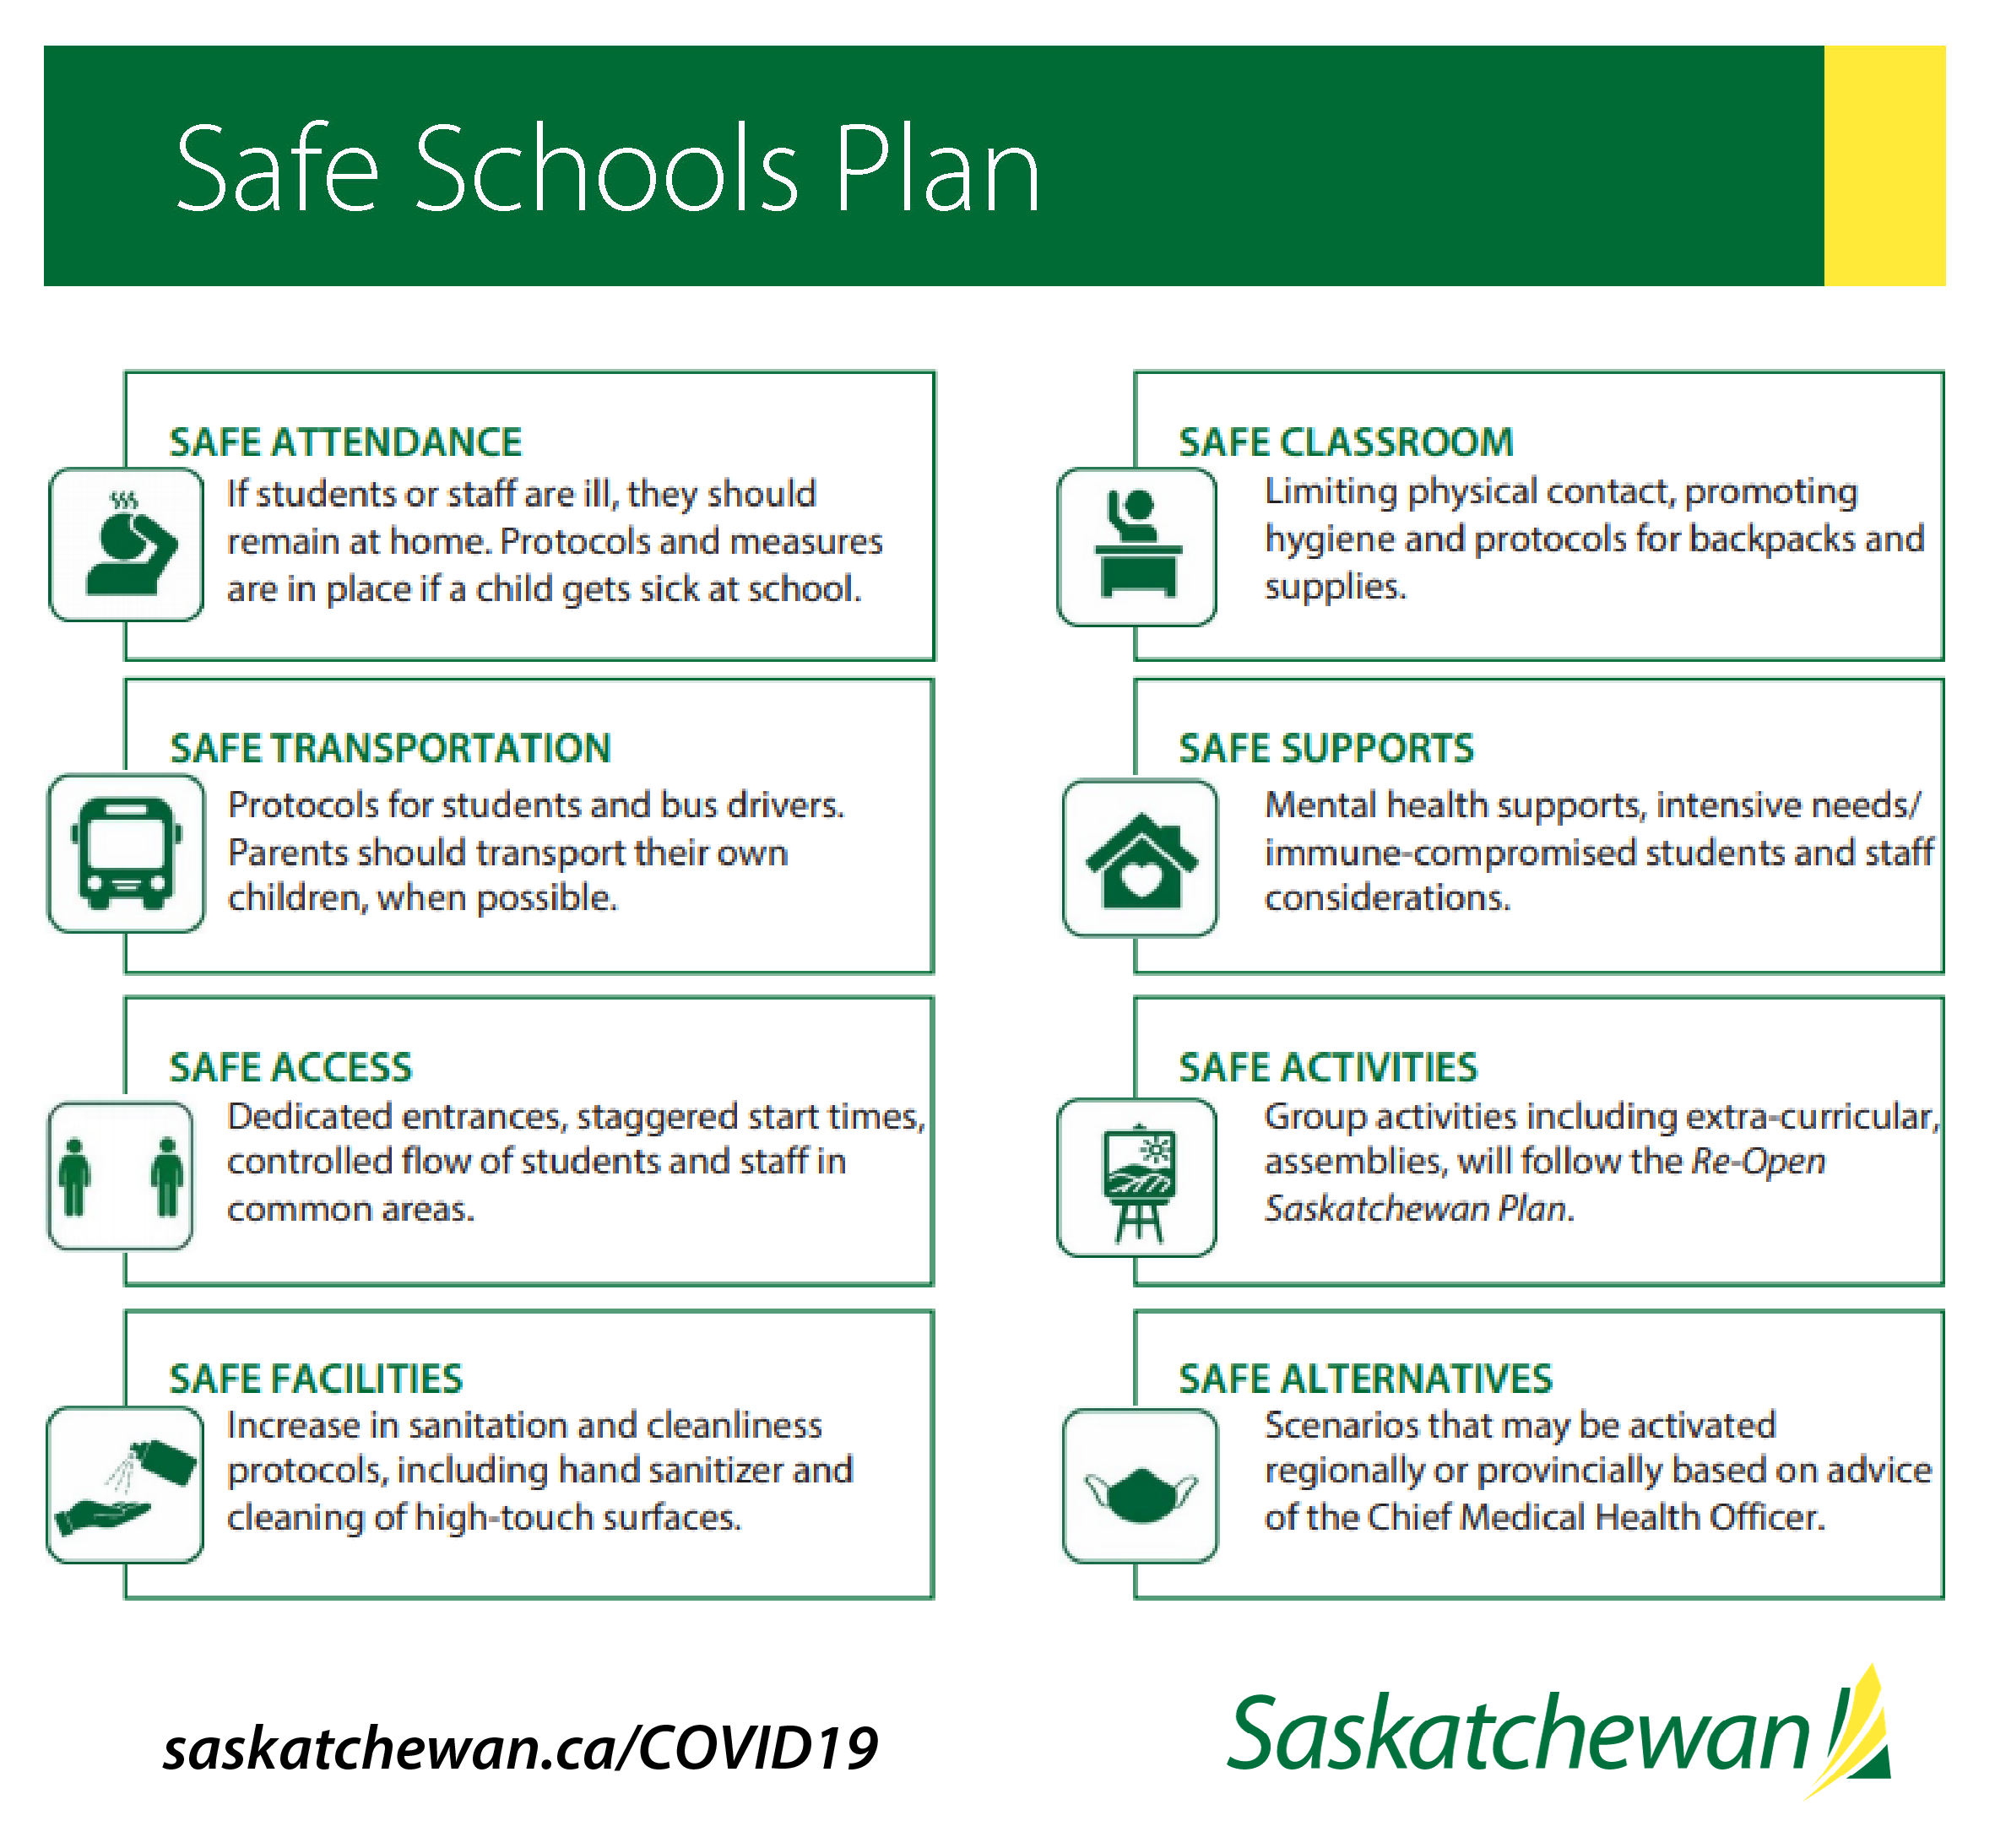 Safe Schools Plan IMAGE-01.png